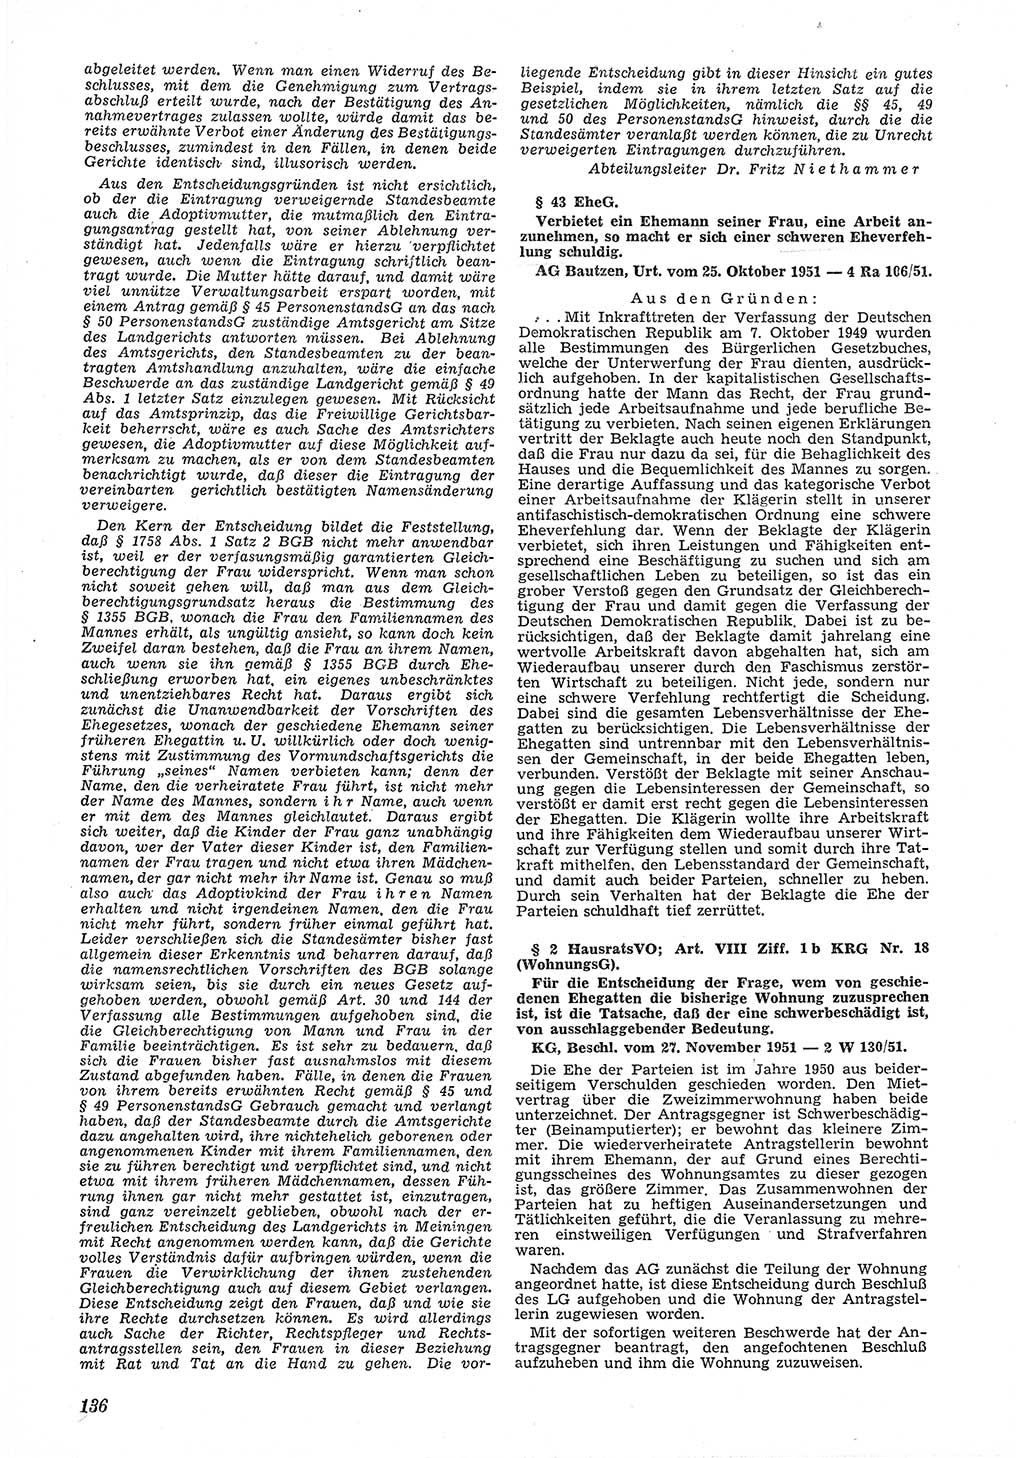 Neue Justiz (NJ), Zeitschrift für Recht und Rechtswissenschaft [Deutsche Demokratische Republik (DDR)], 6. Jahrgang 1952, Seite 136 (NJ DDR 1952, S. 136)